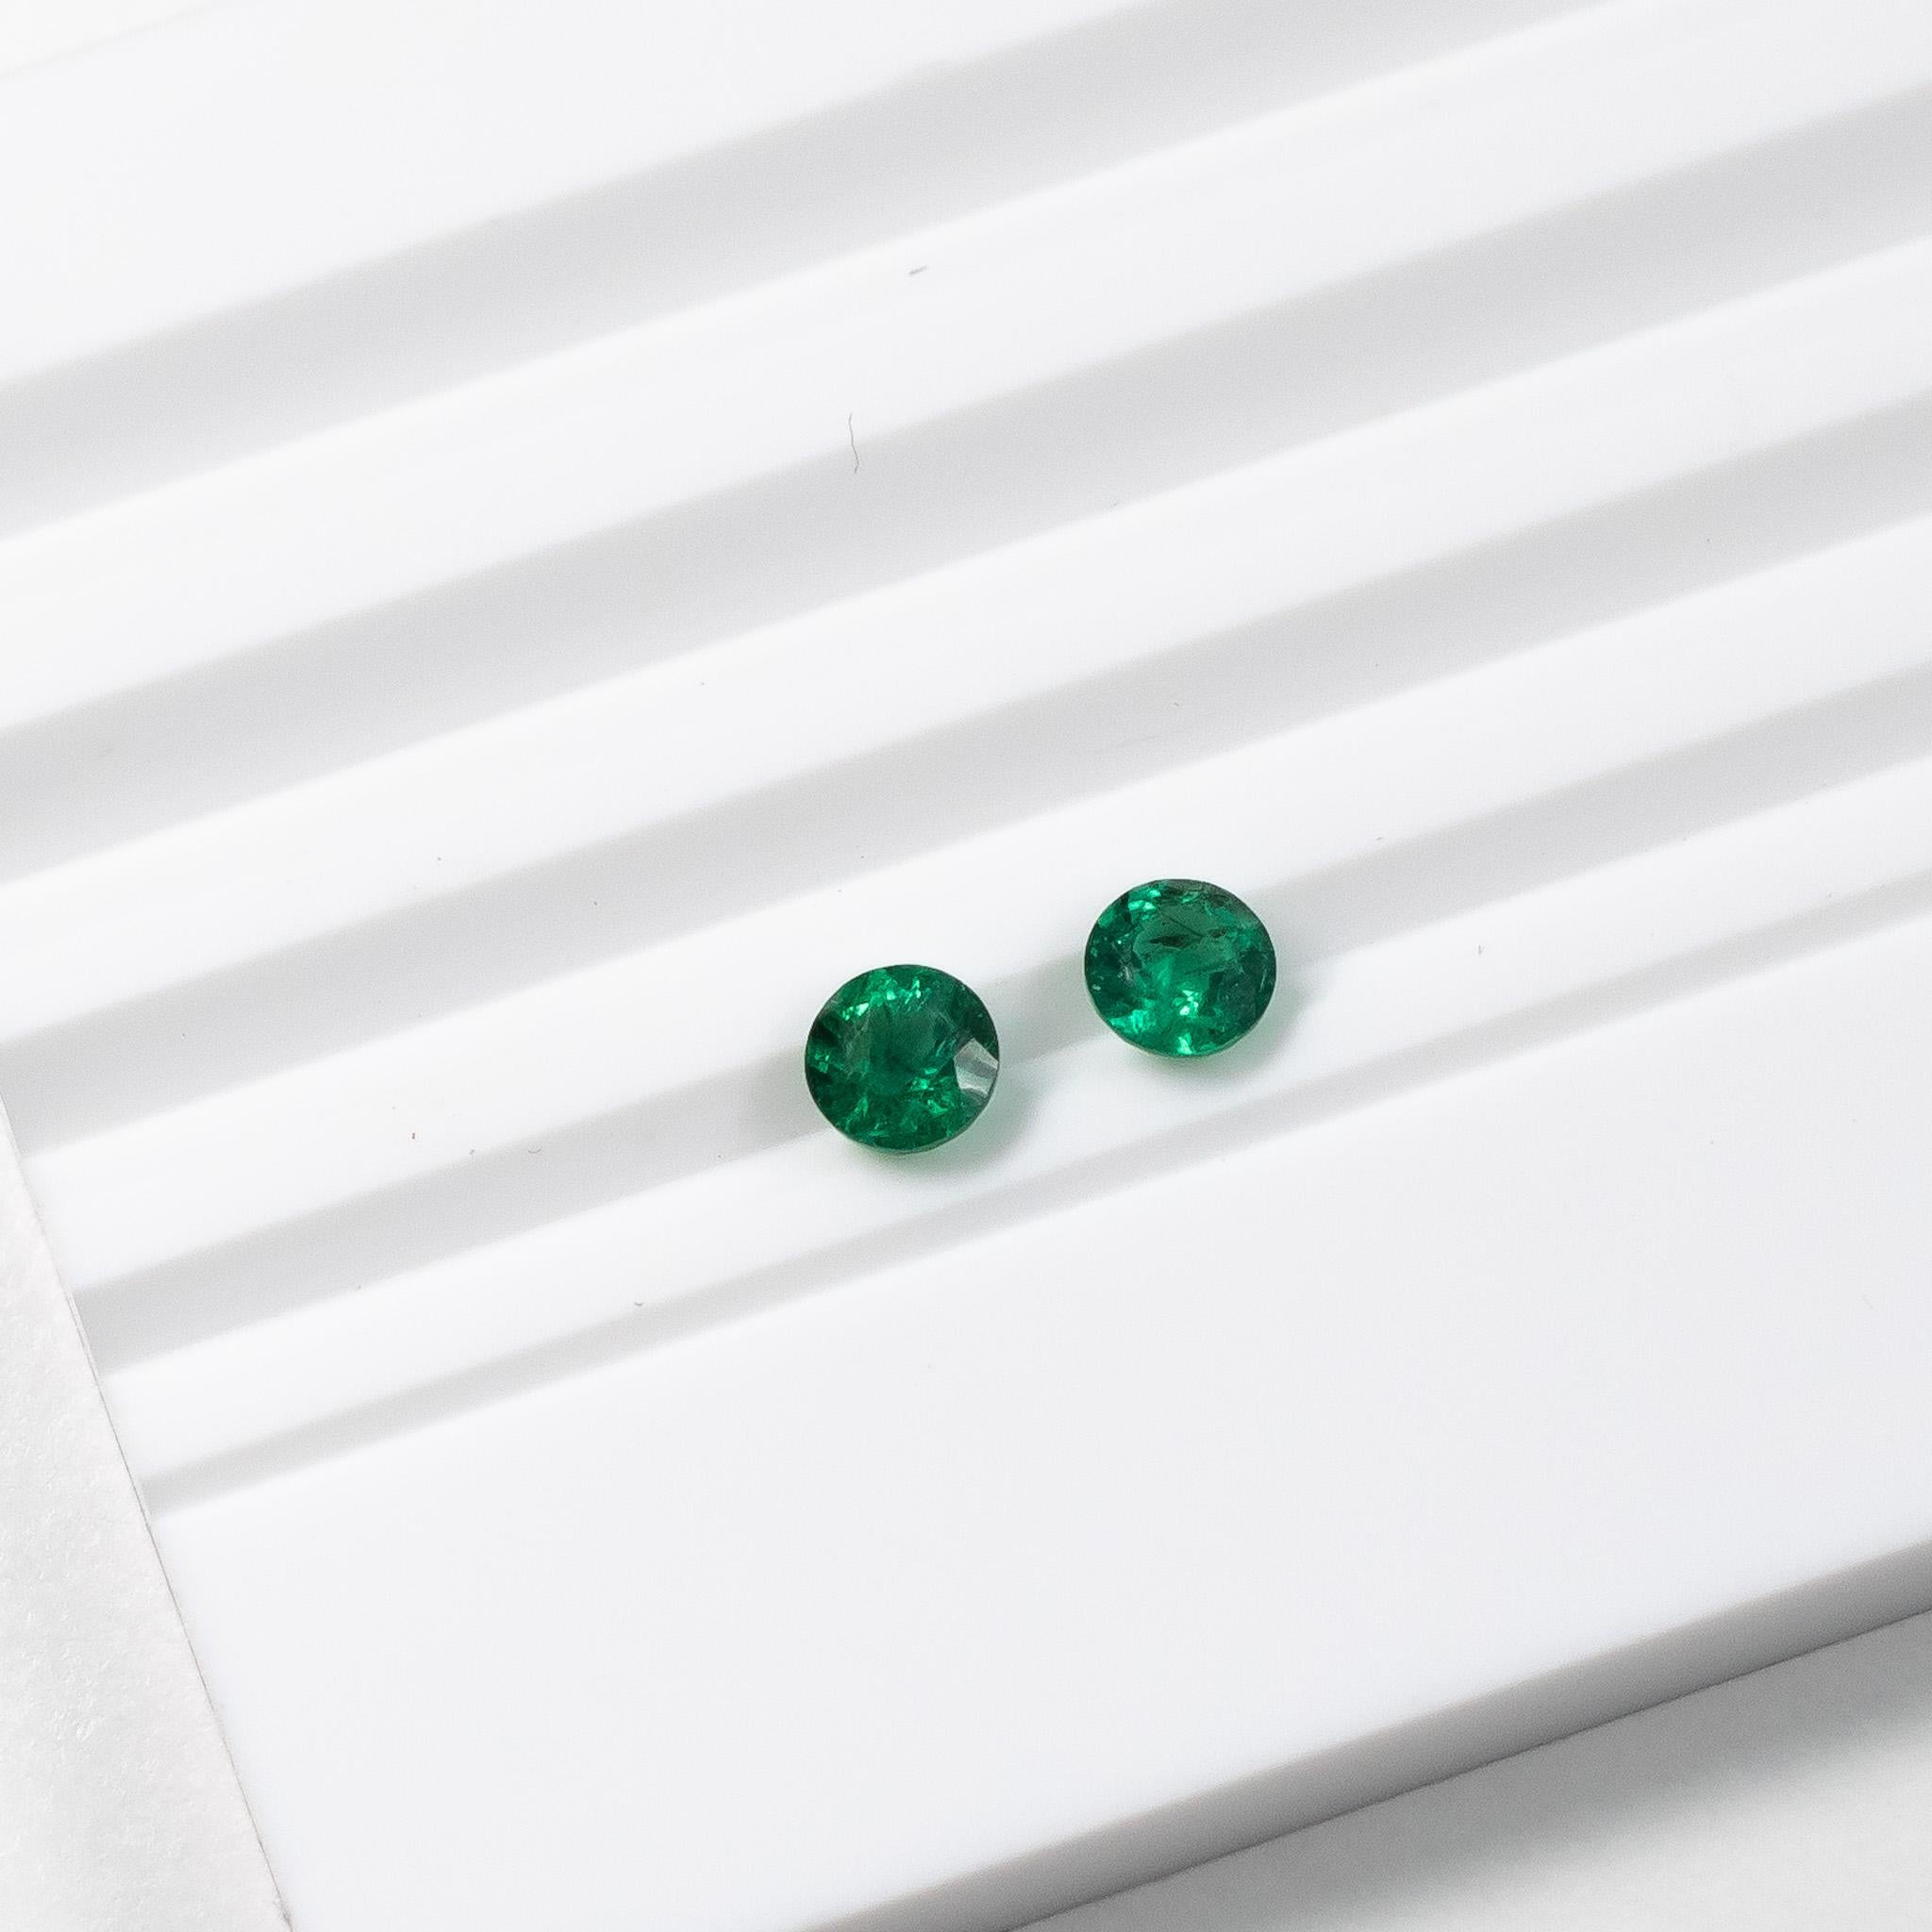 Round Cut Round Green Emerald Studs in Platinum